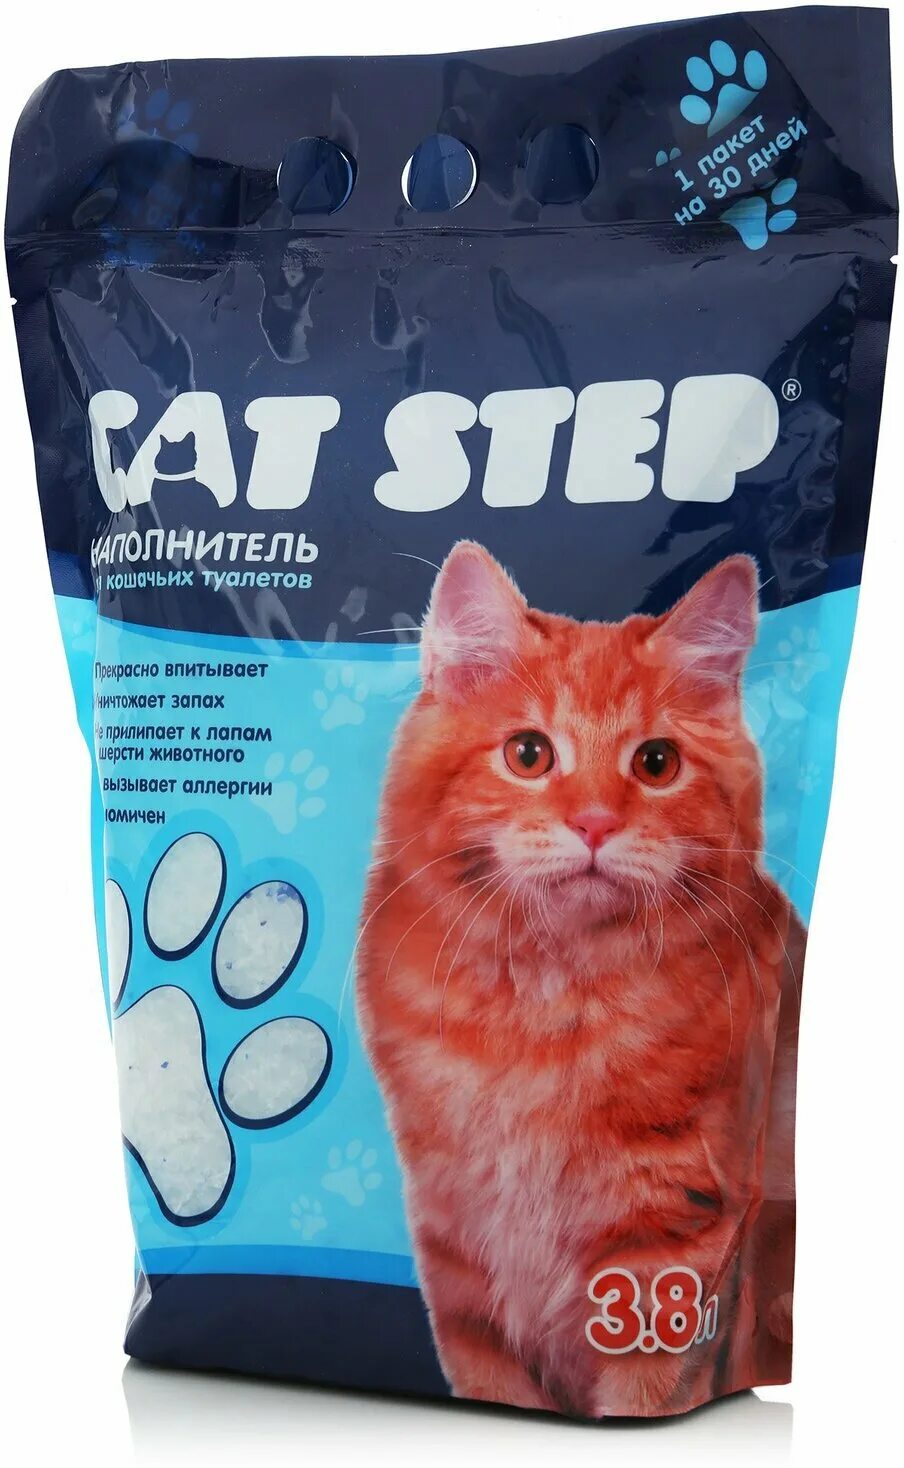 8 в 1 для кошек. Наполнитель Кэт степ силикагель. Cat Step наполнитель силикагель. Наполнитель впитывающий силикагелевый Cat Step Arctic Blue, 3 л. Кэт степ наполнитель силикагелевый.